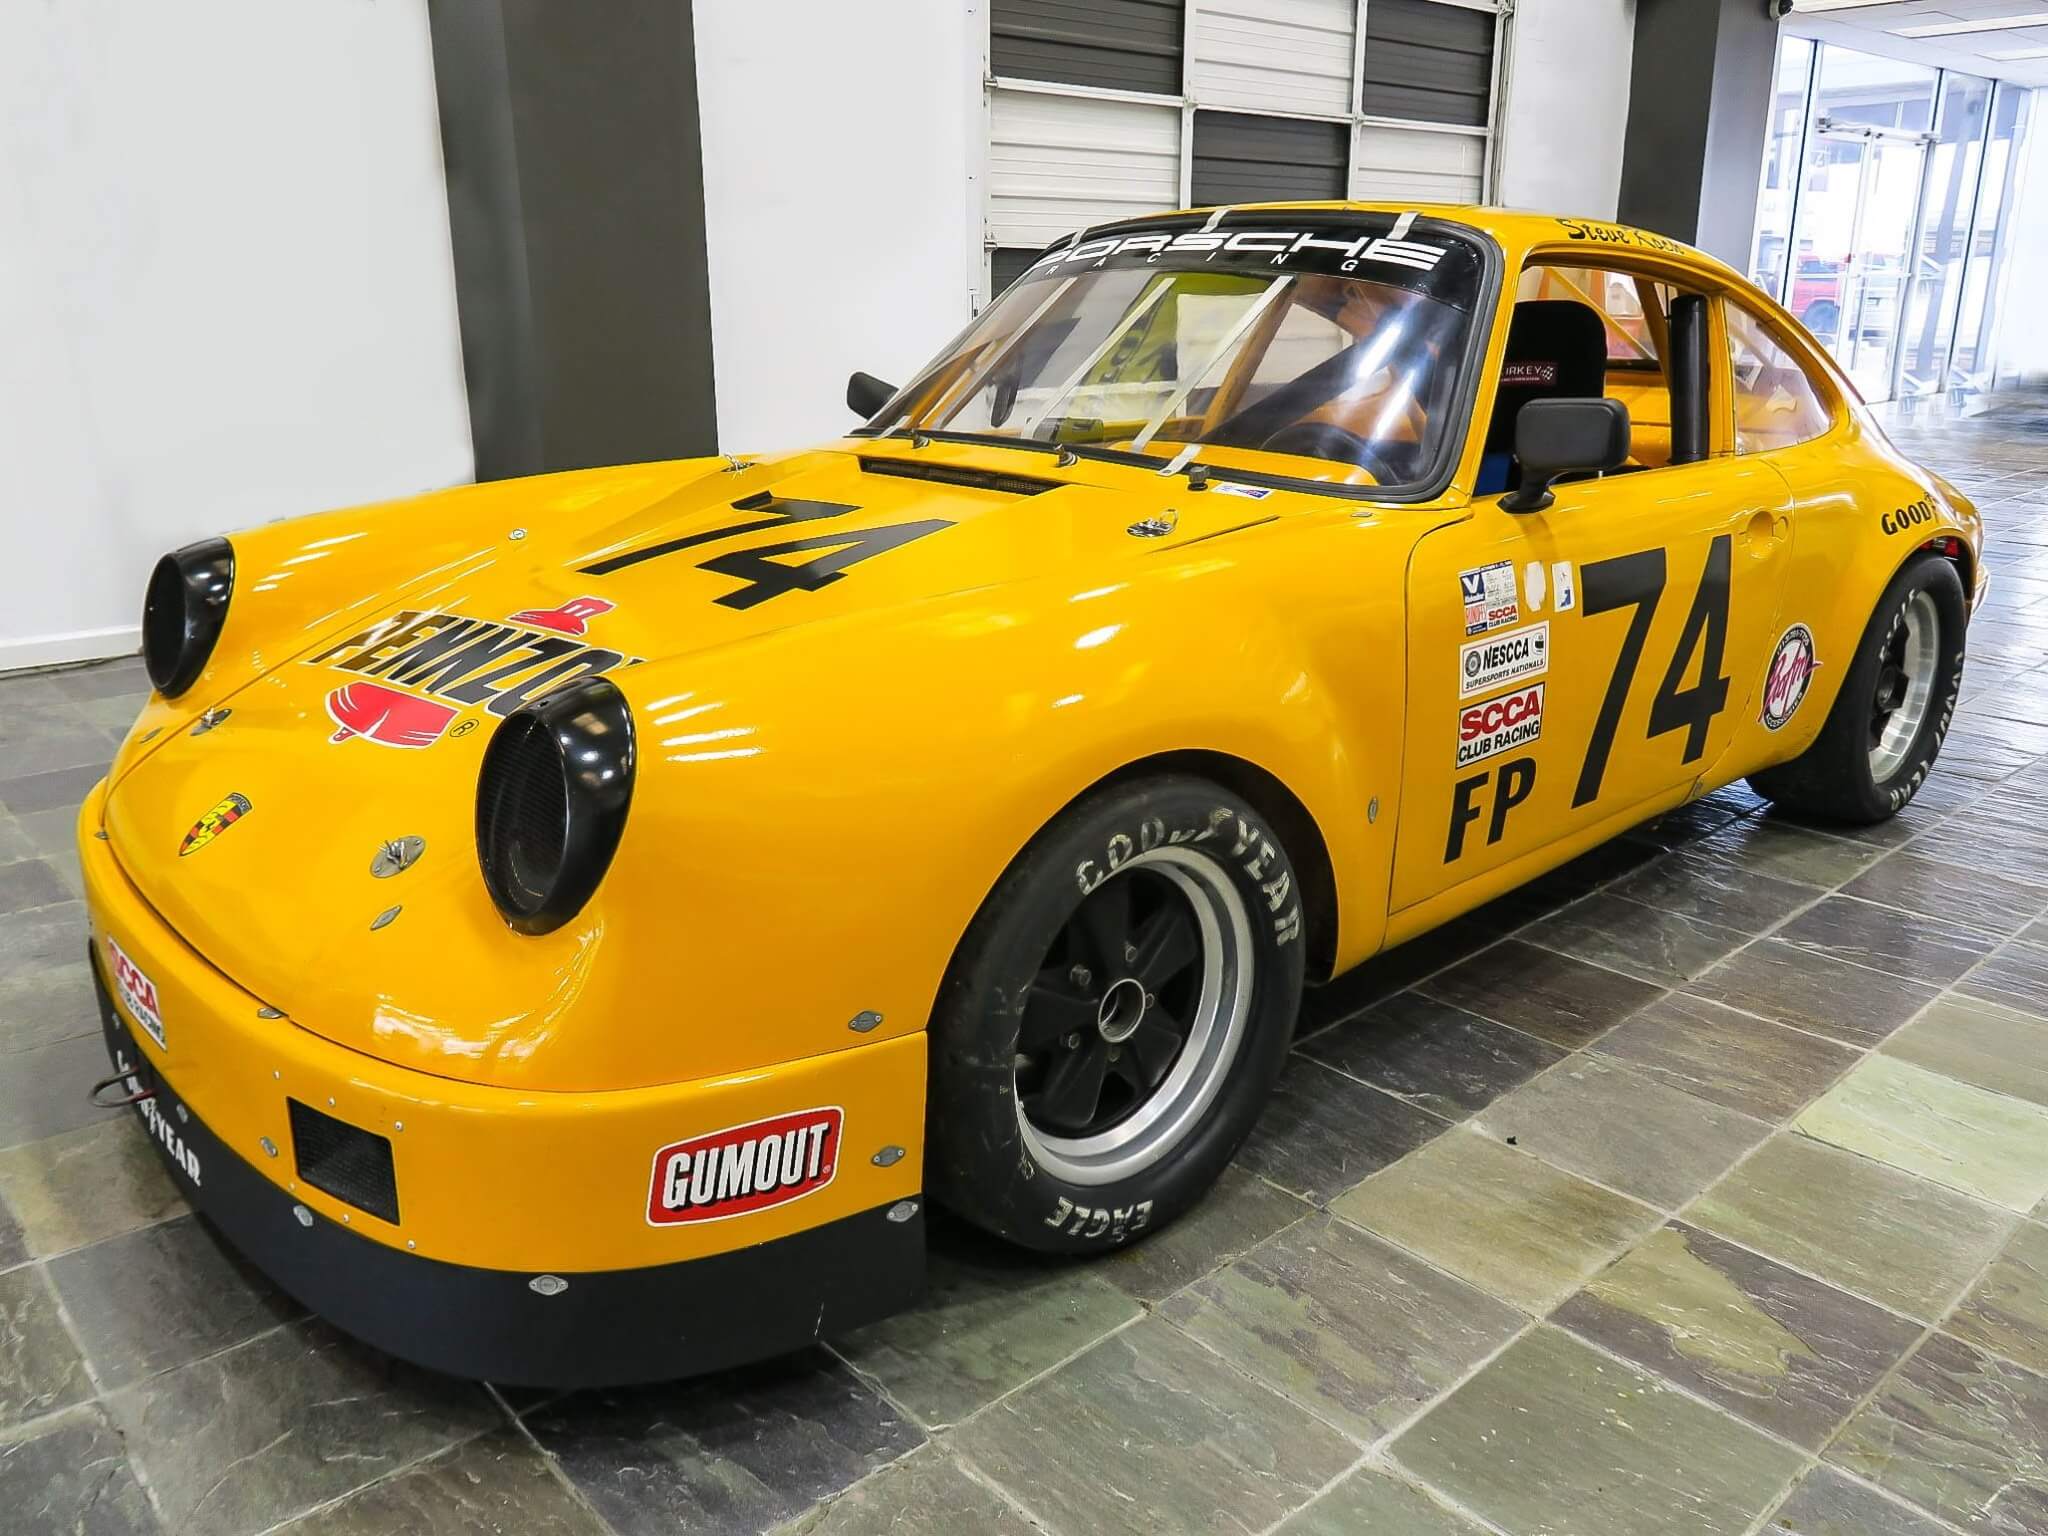 1966 Porsche 912 Racecar